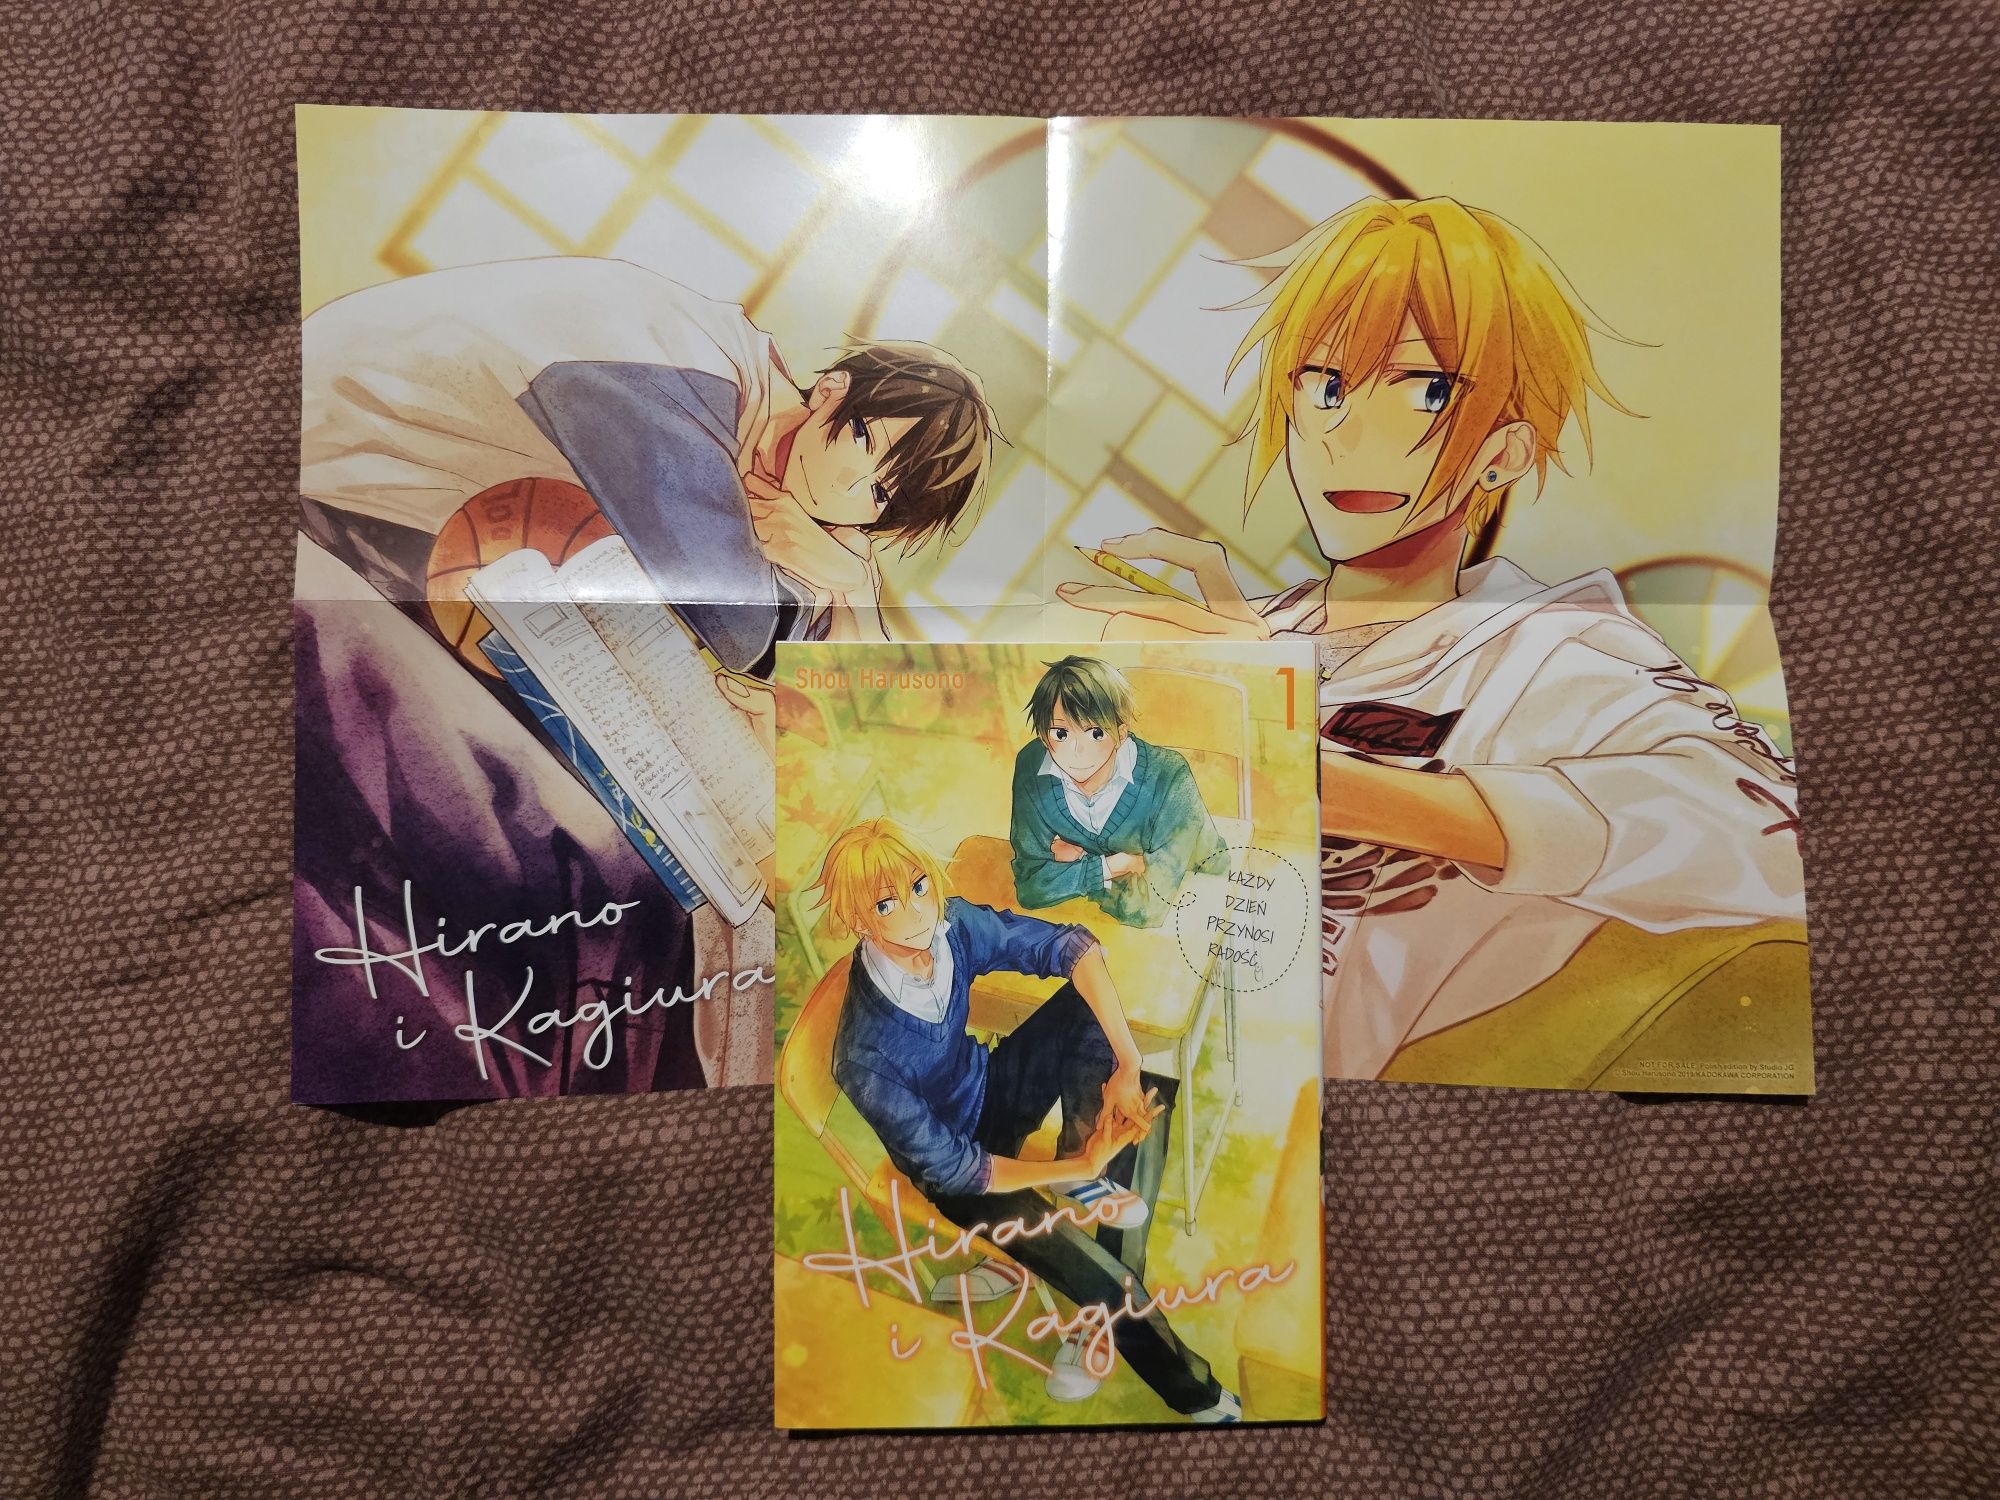 Hirano i Kagiura manga + dodatek plakat